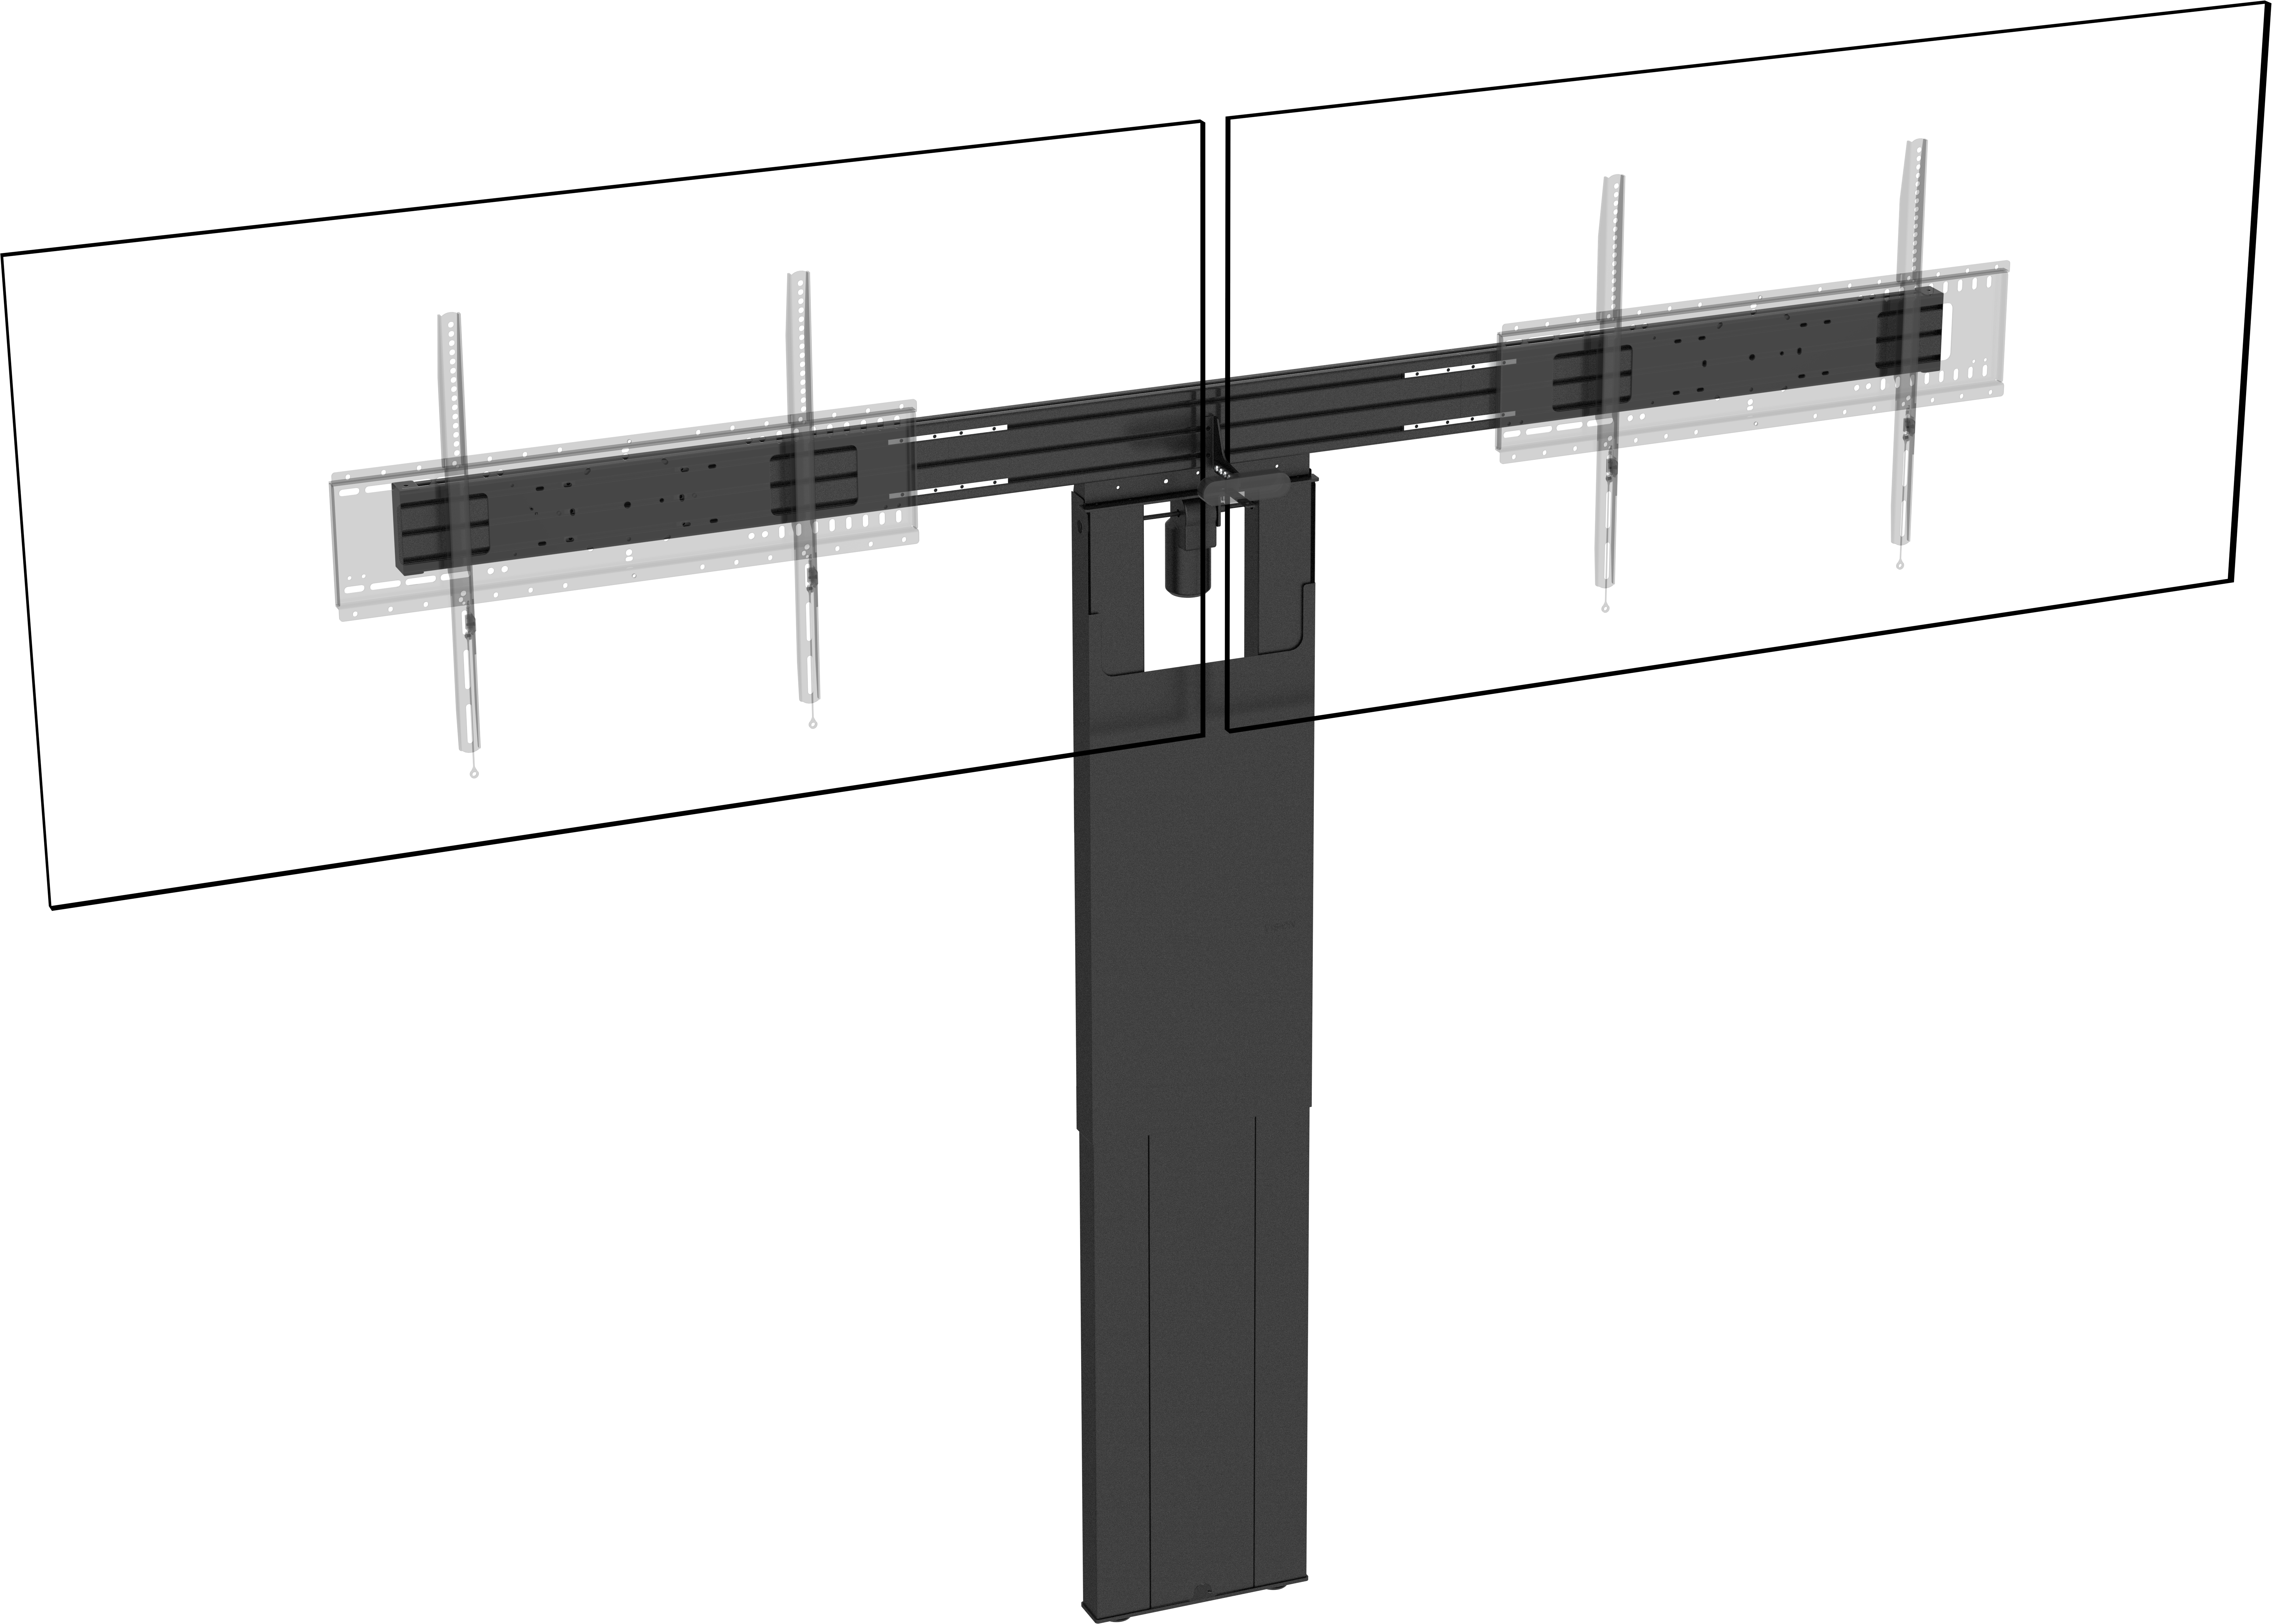 An image showing VFM-F51/DL Supporto a Pavimento per Due Pannelli Piatti